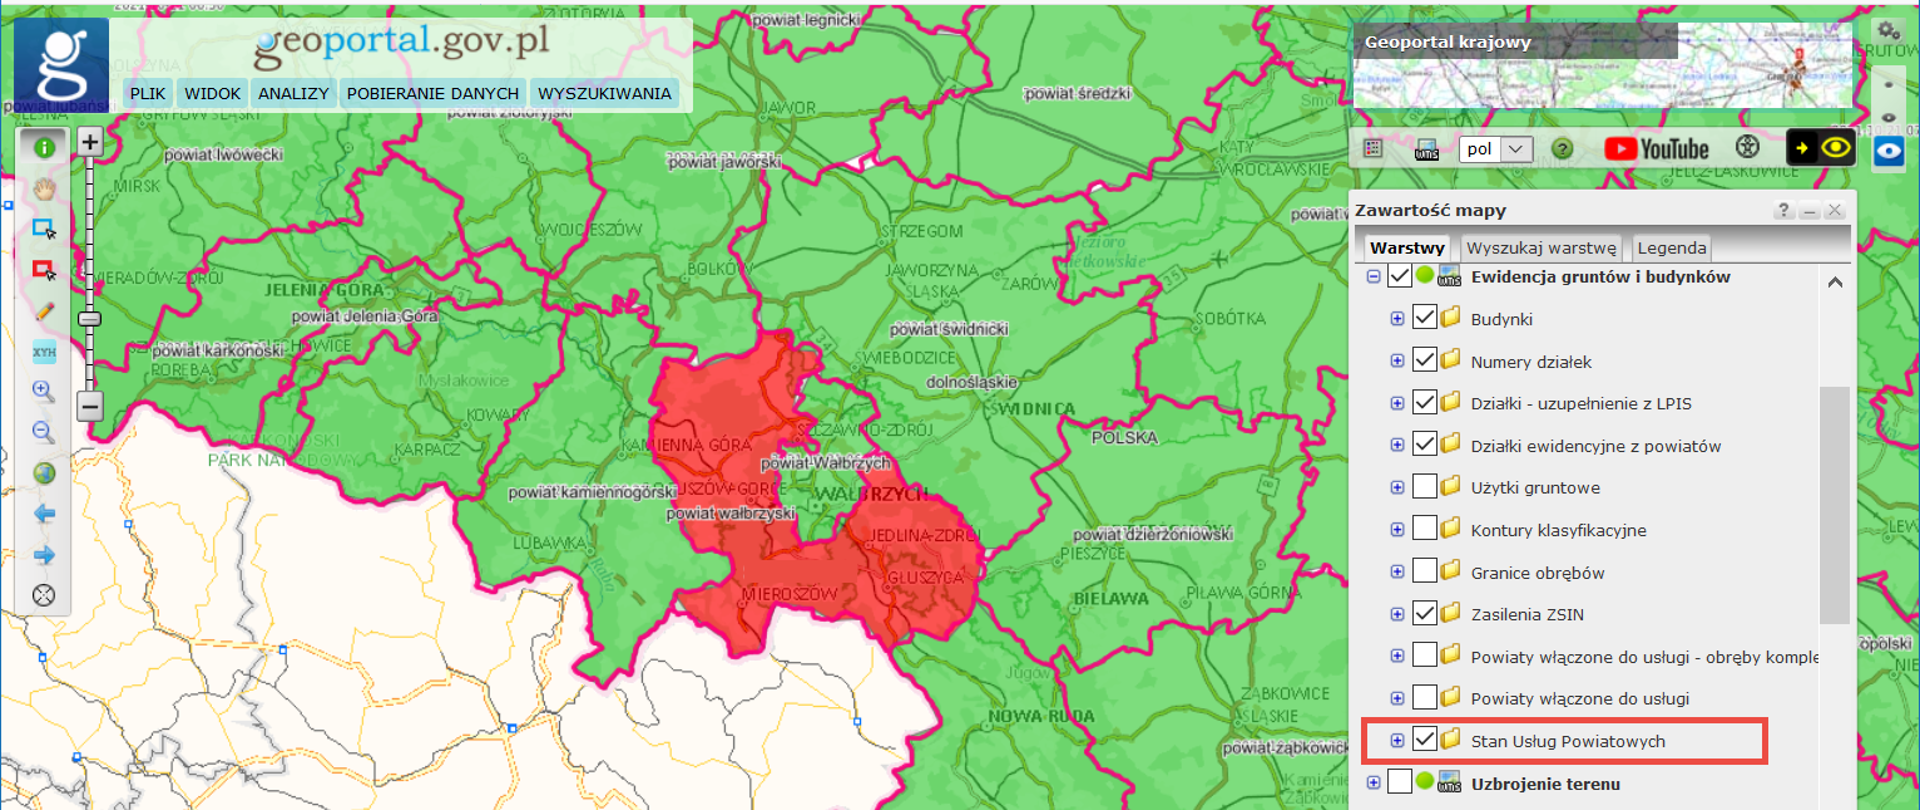 Zrzut z ekranu z serwisu www.geoportal.gov.pl z wyświetlonym stanem usług na fragmencie mapy Polski z zaznaczonym terenem, na którym usługi nie działają.